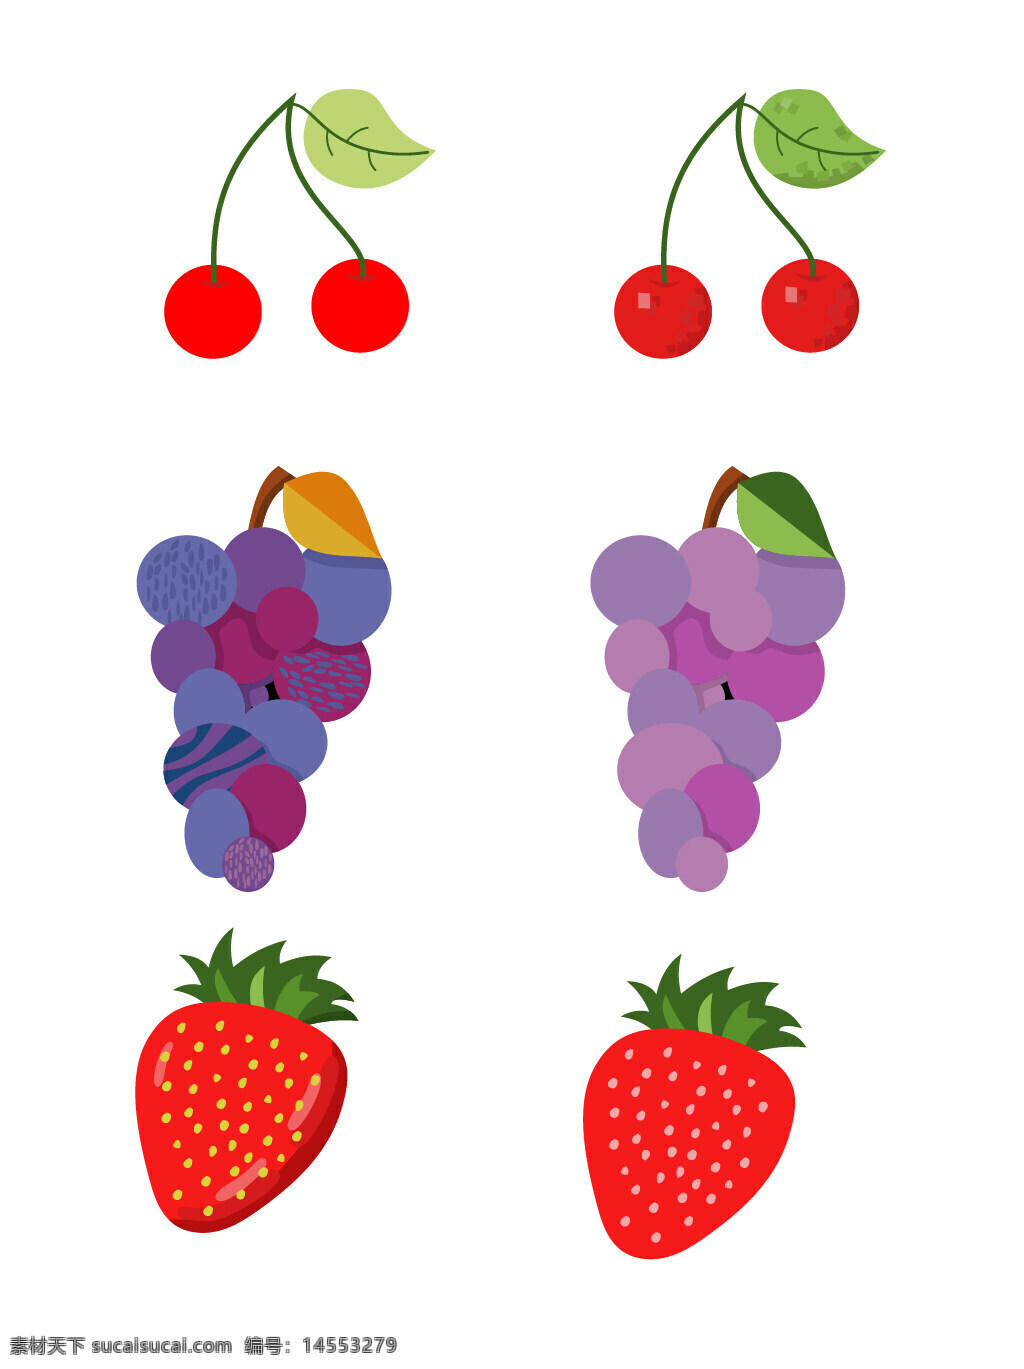 樱桃 葡萄 草莓 水果 浆果 瓜果 食物 手绘水果 矢量水果 手绘素材 矢量素材 新鲜水果 植物